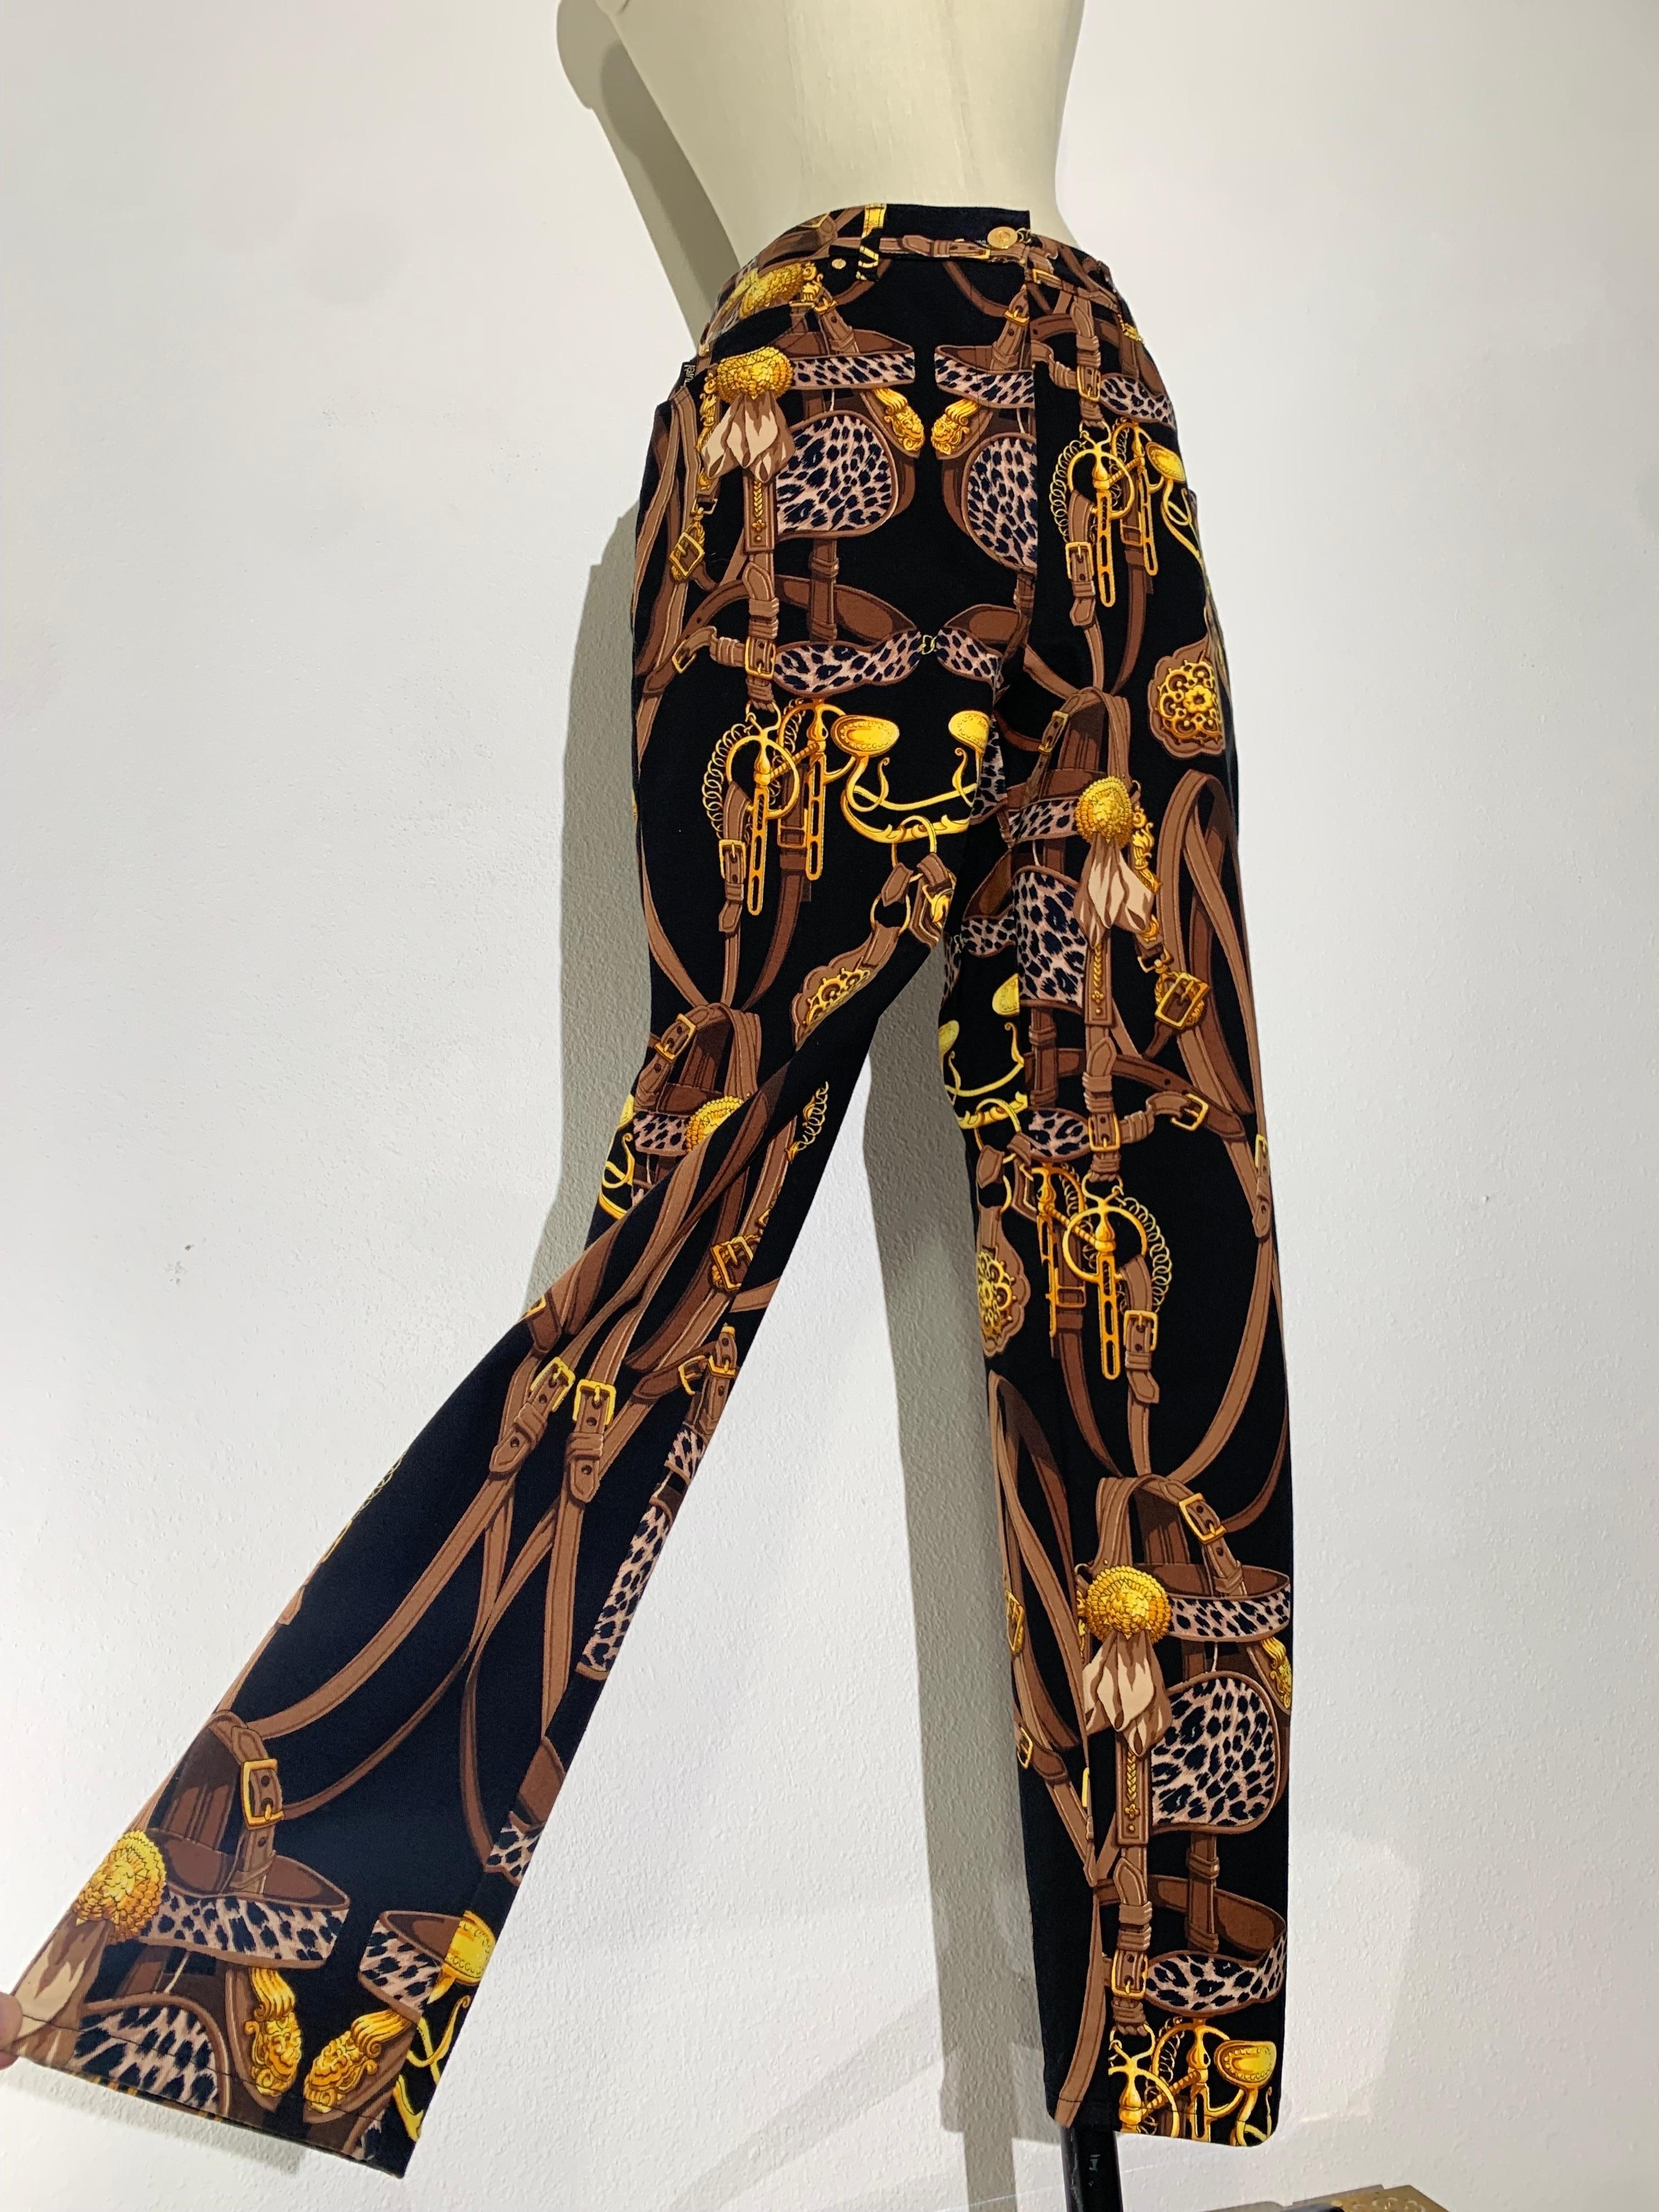 1980er Jahre Laurel Western-inspirierte Print Black Denim Pants Jeans: Neu, nie getragen. Konisch zulaufendes Bein mit hoher Taille und vollem Schnitt plus ein bisschen Stretch für kurvige Frauen. Vier Taschen mit goldenen Ösen und Knopf. Passt in